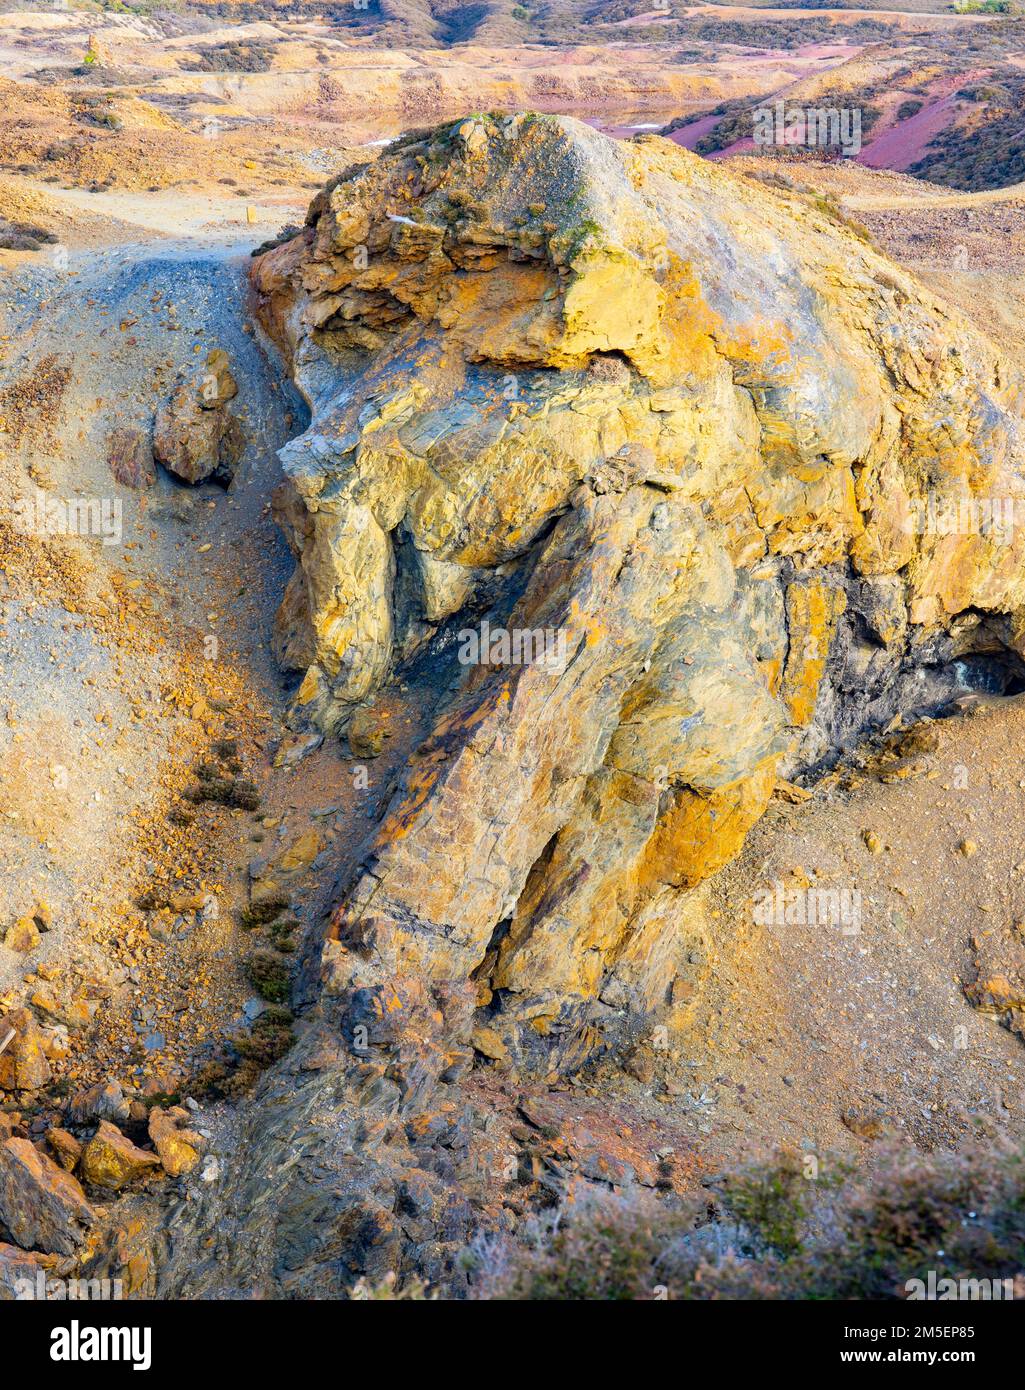 Particolare della parete rocciosa nella miniera di rame di Parys Mountain Foto Stock